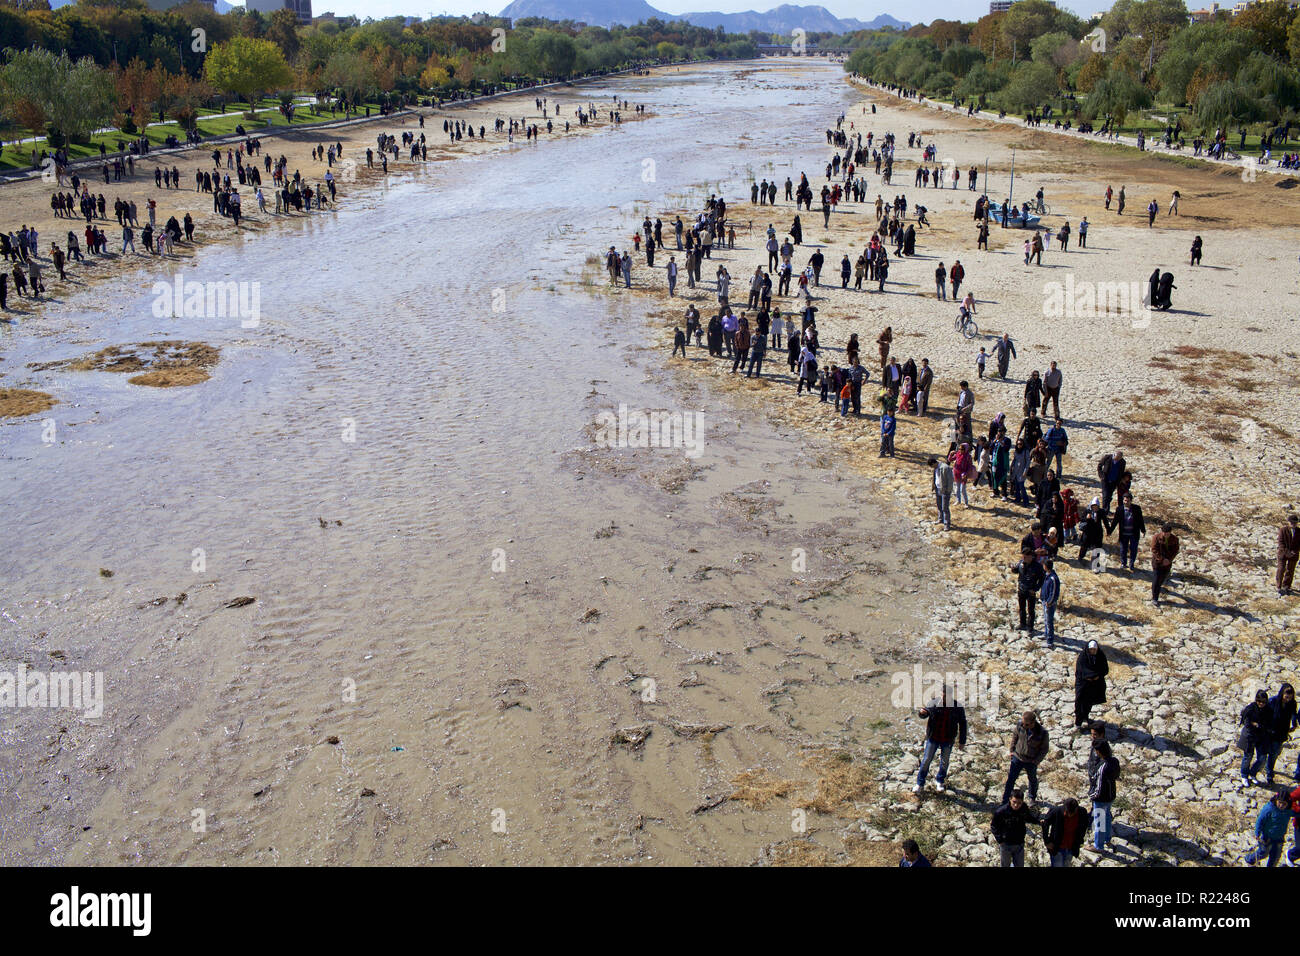 Iran : Isfahan 2011/11/07. Les gens en quête d'eau, à proximité de la pont Allahverdi Khan (plus connue sous le nom de Si-O-se-pol), de l'autre côté de la rivière Zayanderud. C Banque D'Images